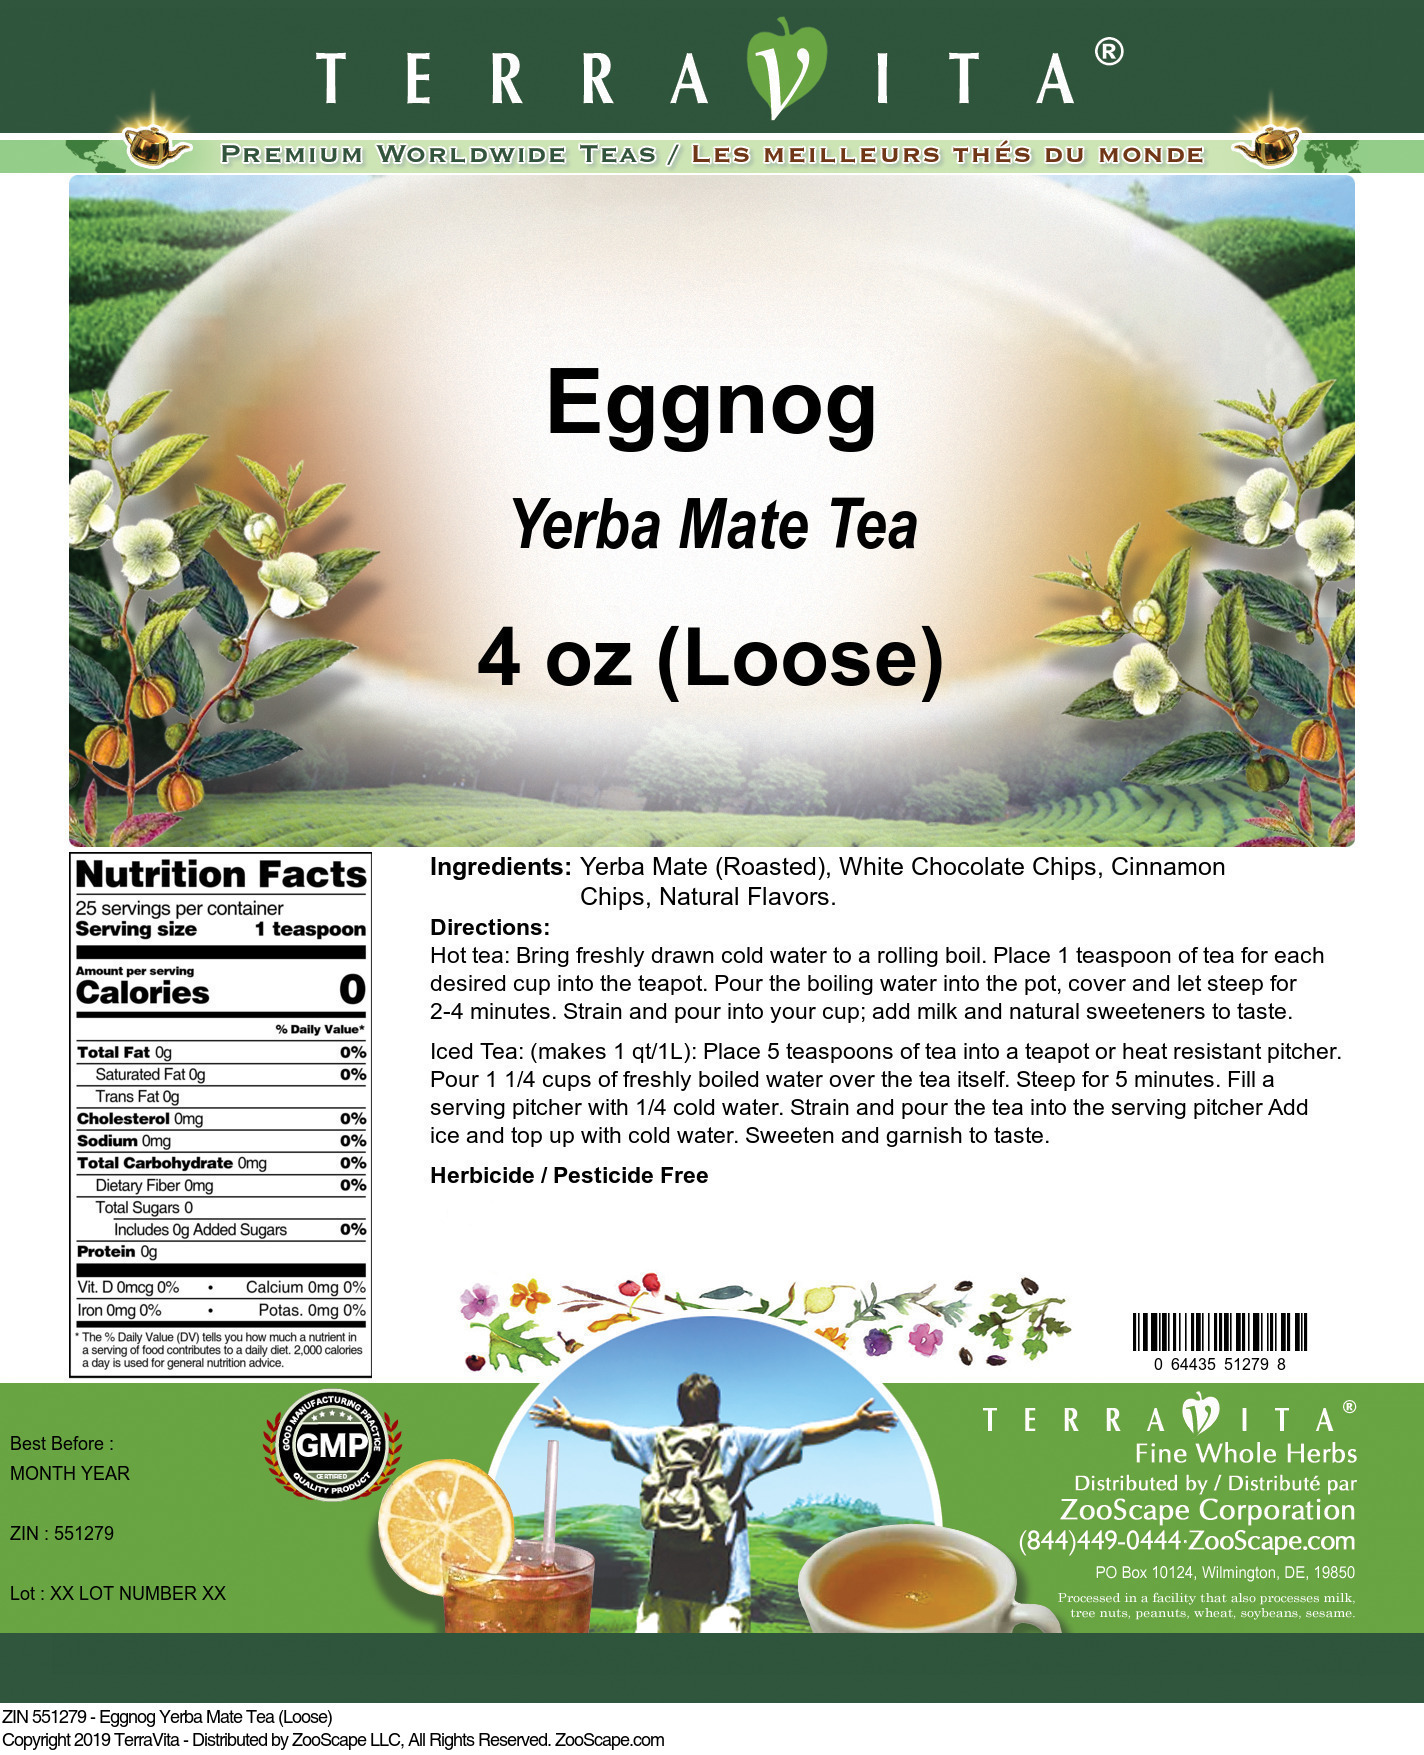 Eggnog Yerba Mate Tea (Loose) - Label